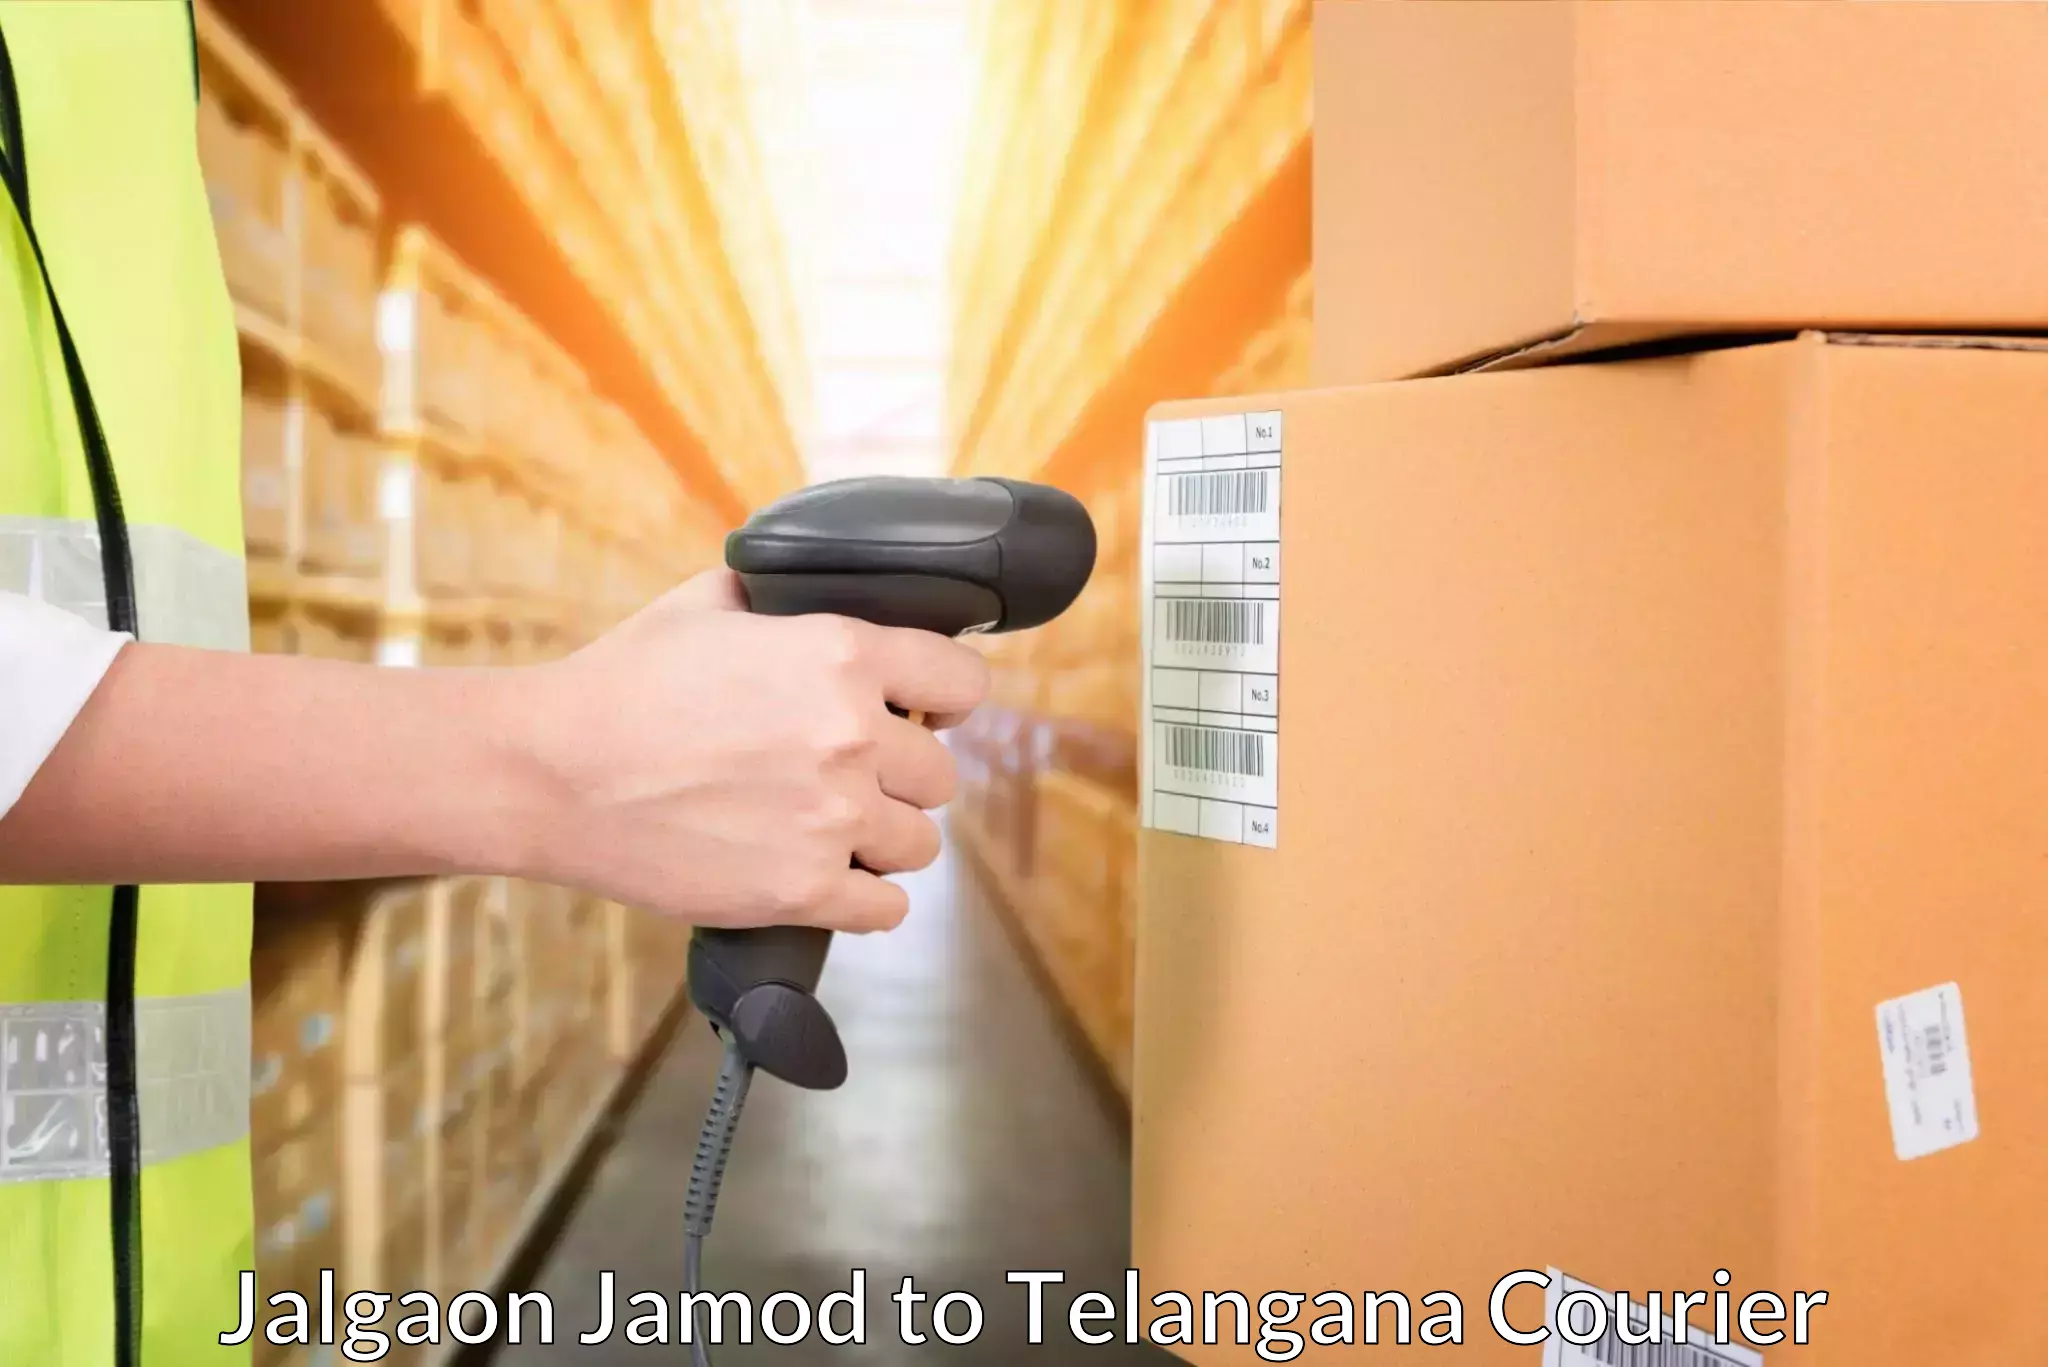 Automated shipping processes in Jalgaon Jamod to Rayaparthi